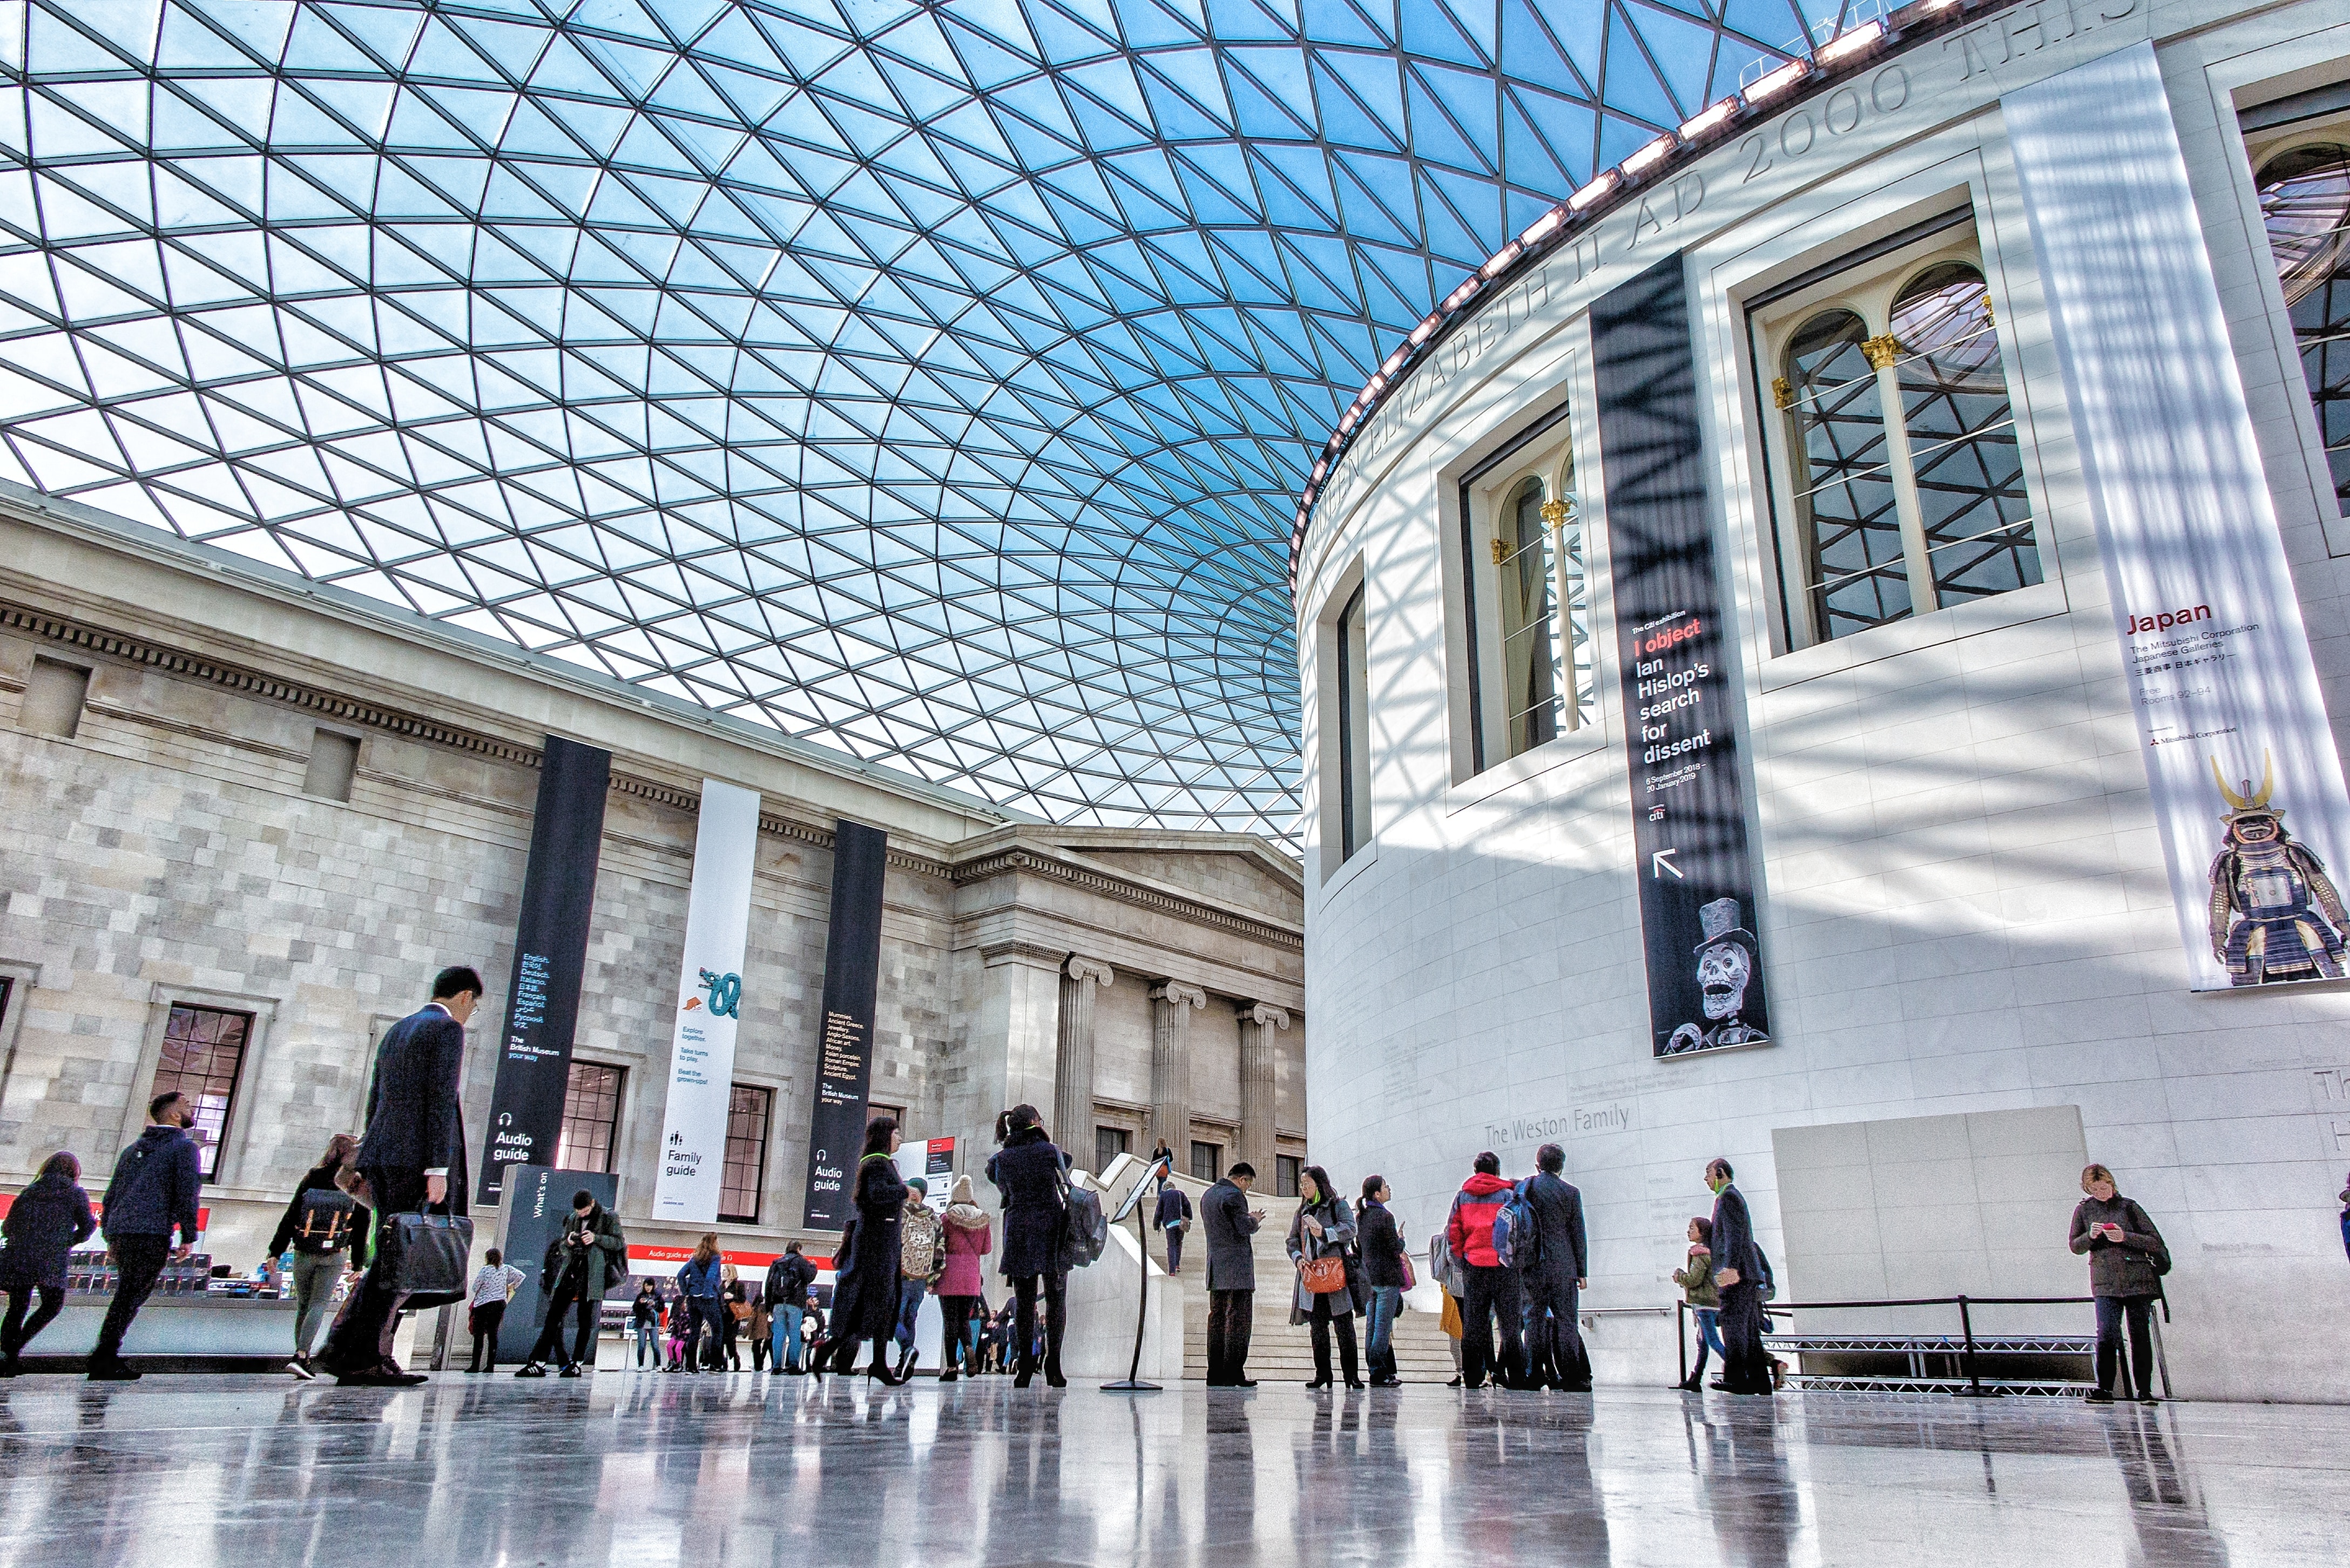 Βρετανικό Μουσείο: Τα στοιχεία της έρευνας για το σκάνδαλο κλοπής – Tι εκλάπη, πού και πόσο πουλήθηκαν